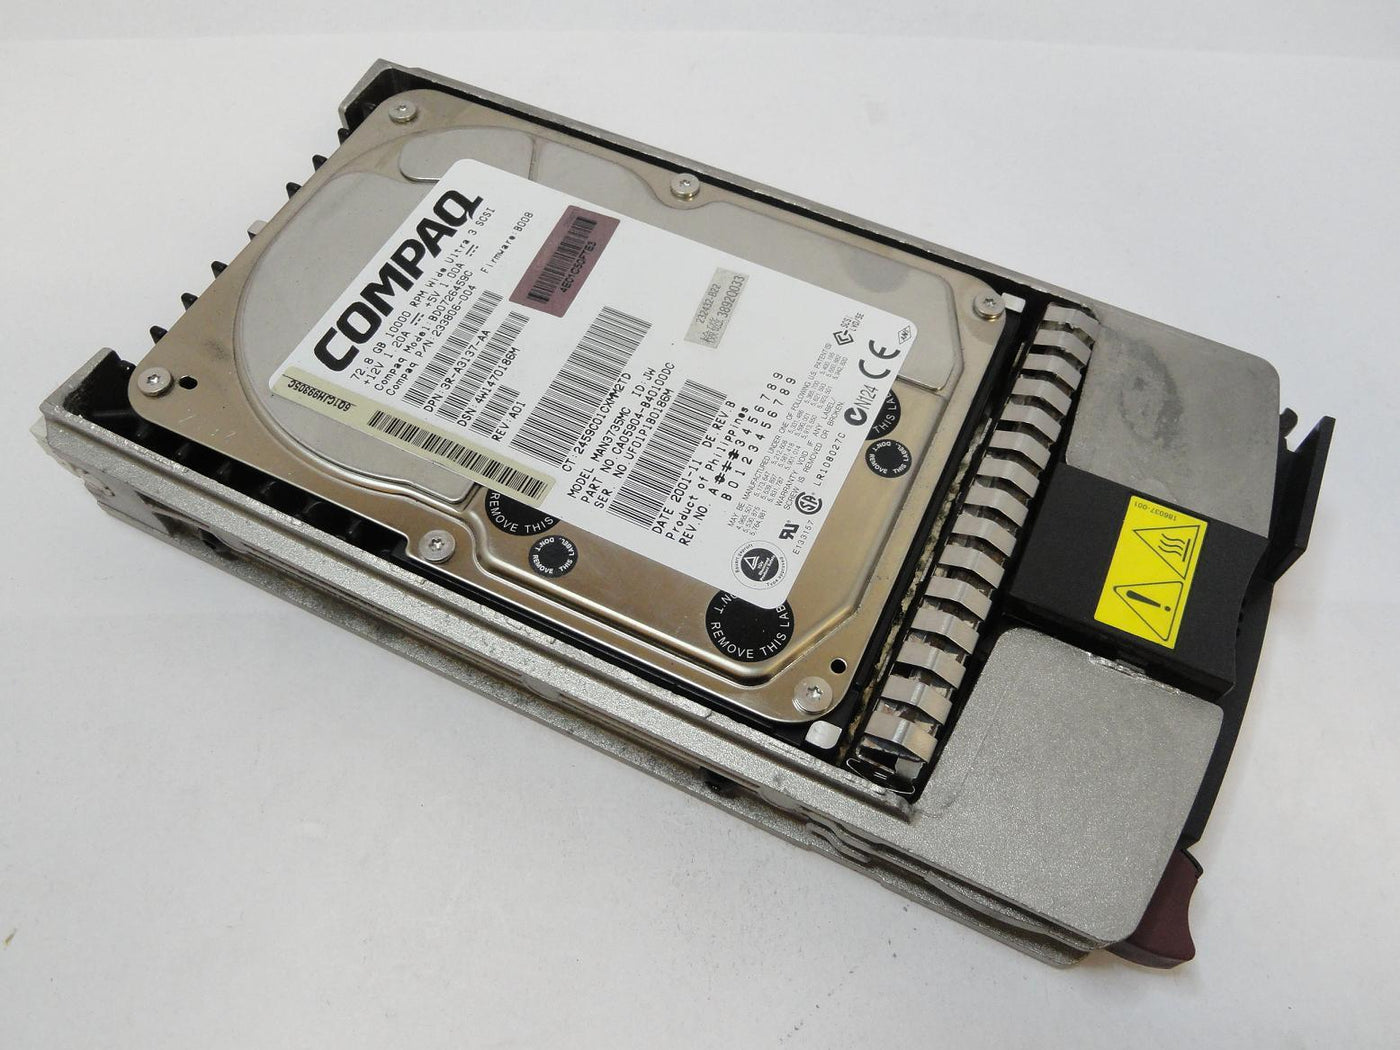 CA05904-B40100DC - Fujitsu Compaq 72.8GB SCSI 80 Pin 10Krpm 3.5in HDD in Caddy - Refurbished